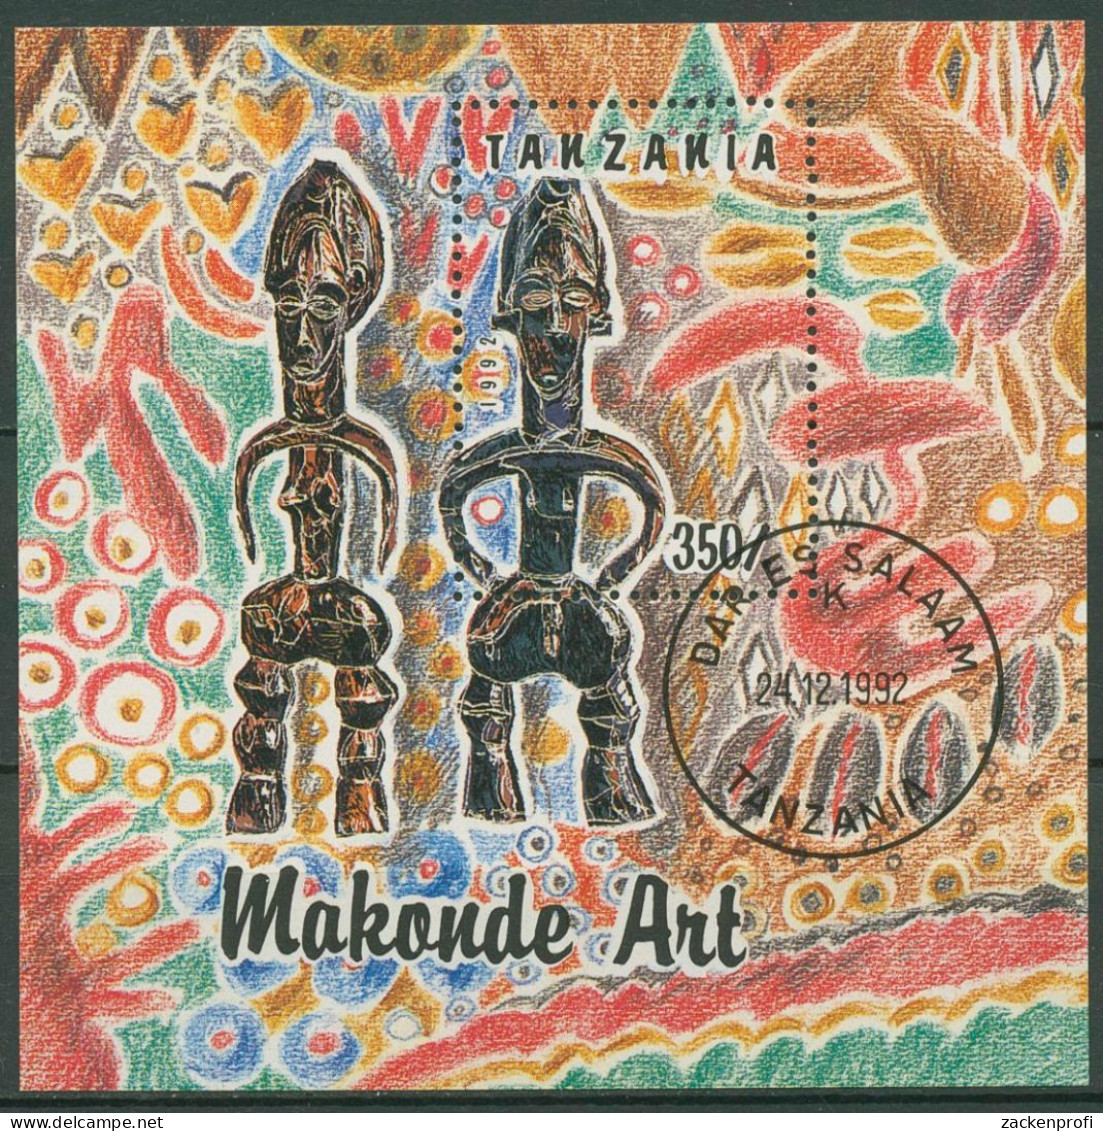 Tansania 1992 Makonde-Kunst Holzfiguren Block 208 Gestempelt (C40265) - Tanzania (1964-...)